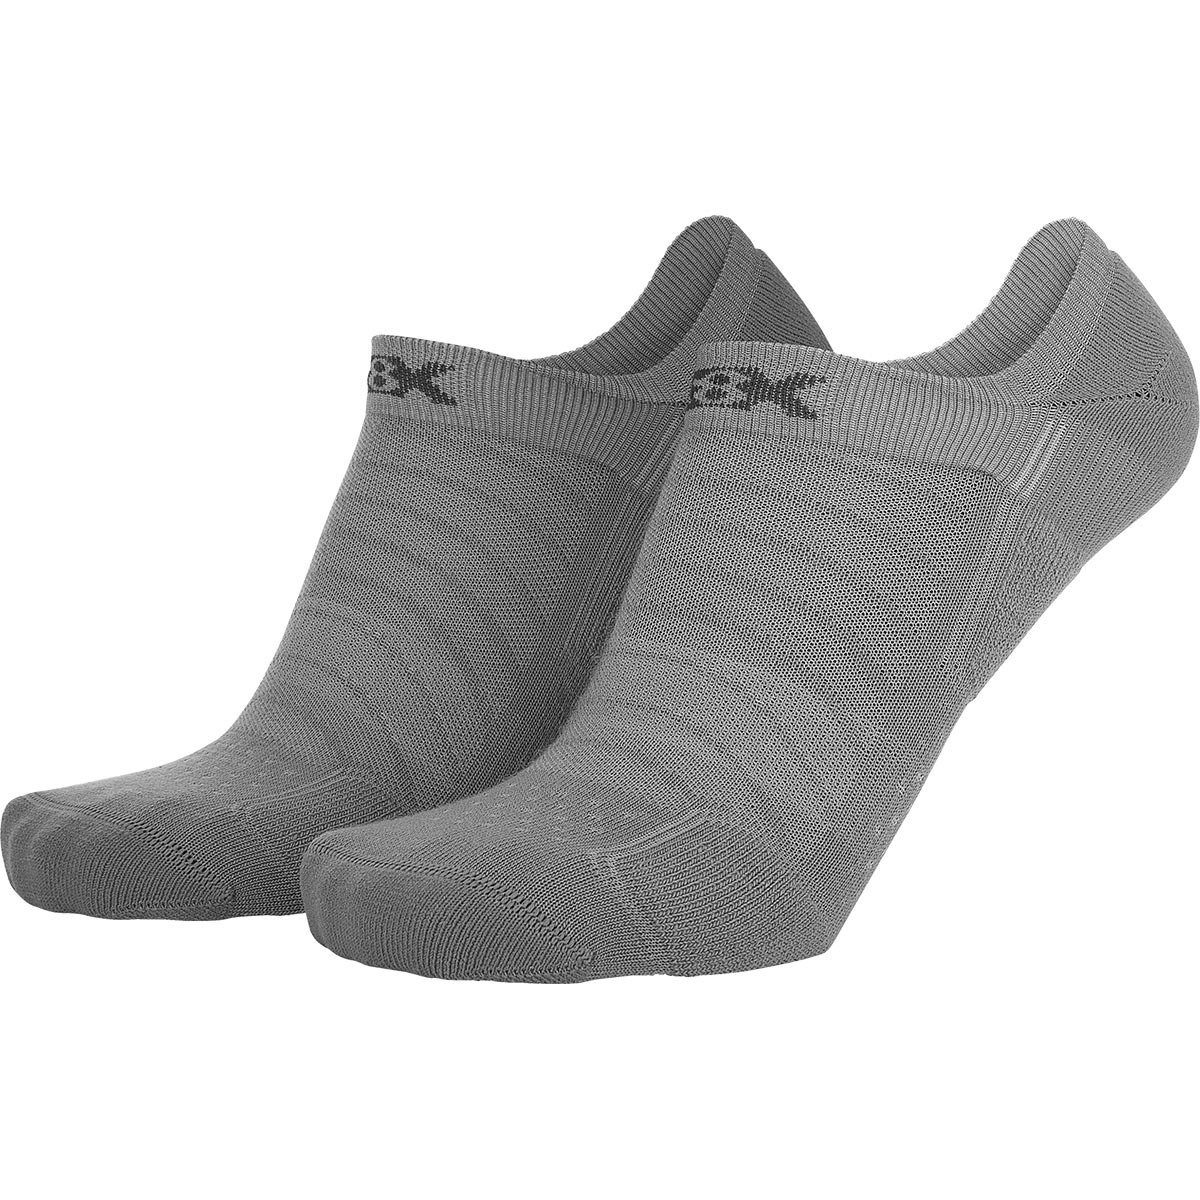 Image of Eightsox Calze Sneaker Merino, confezione da 2 paia